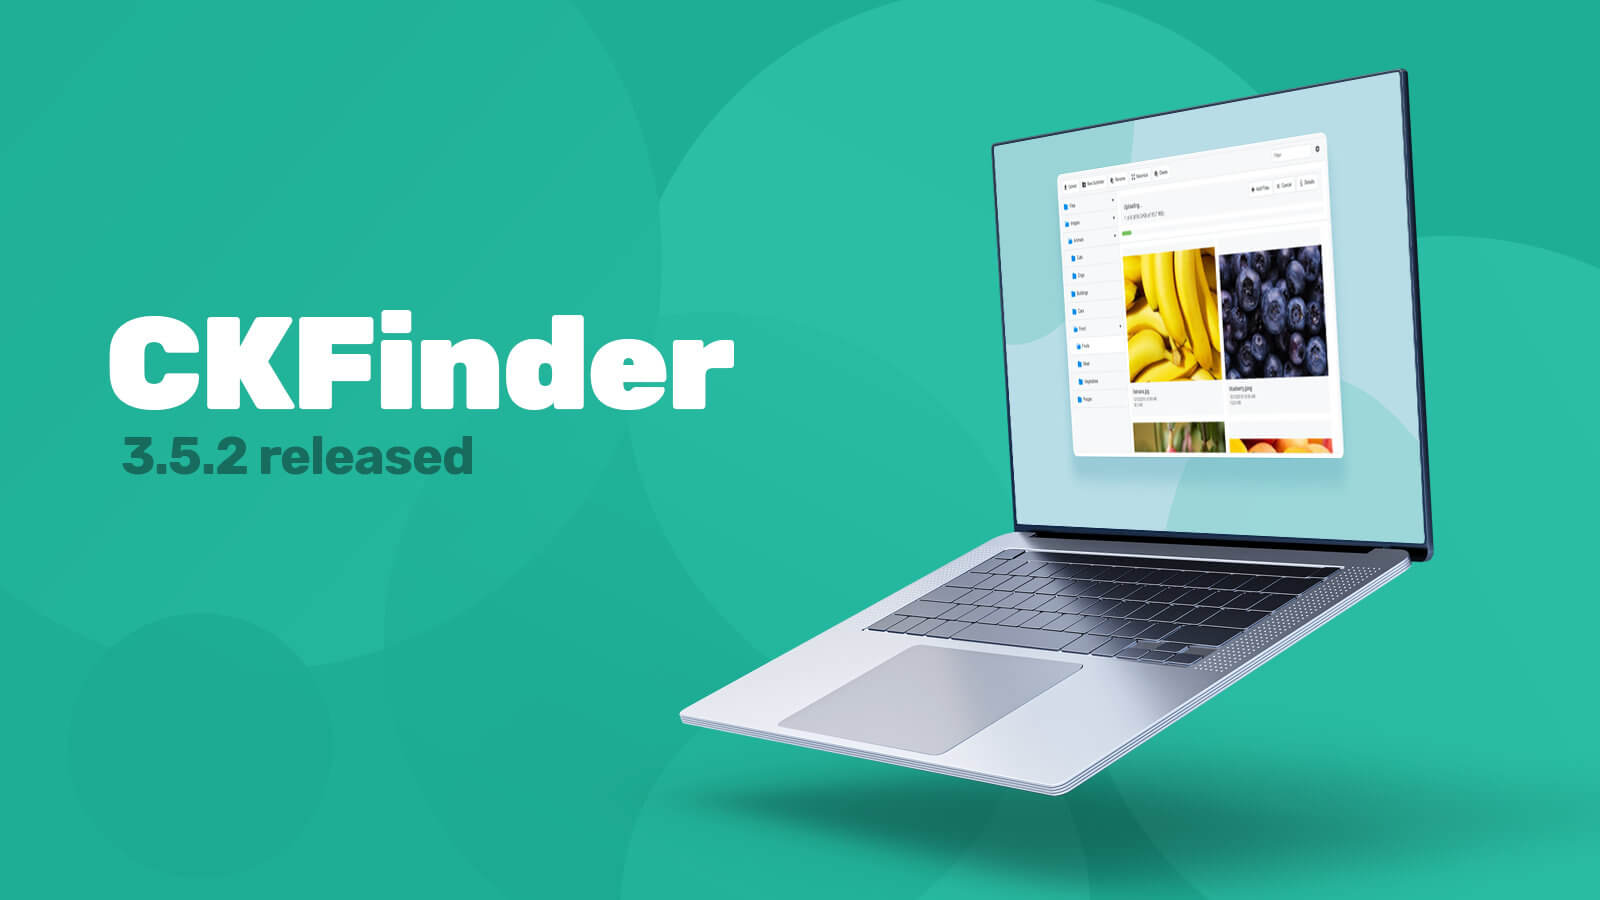 CKFinder 3.5.2 released